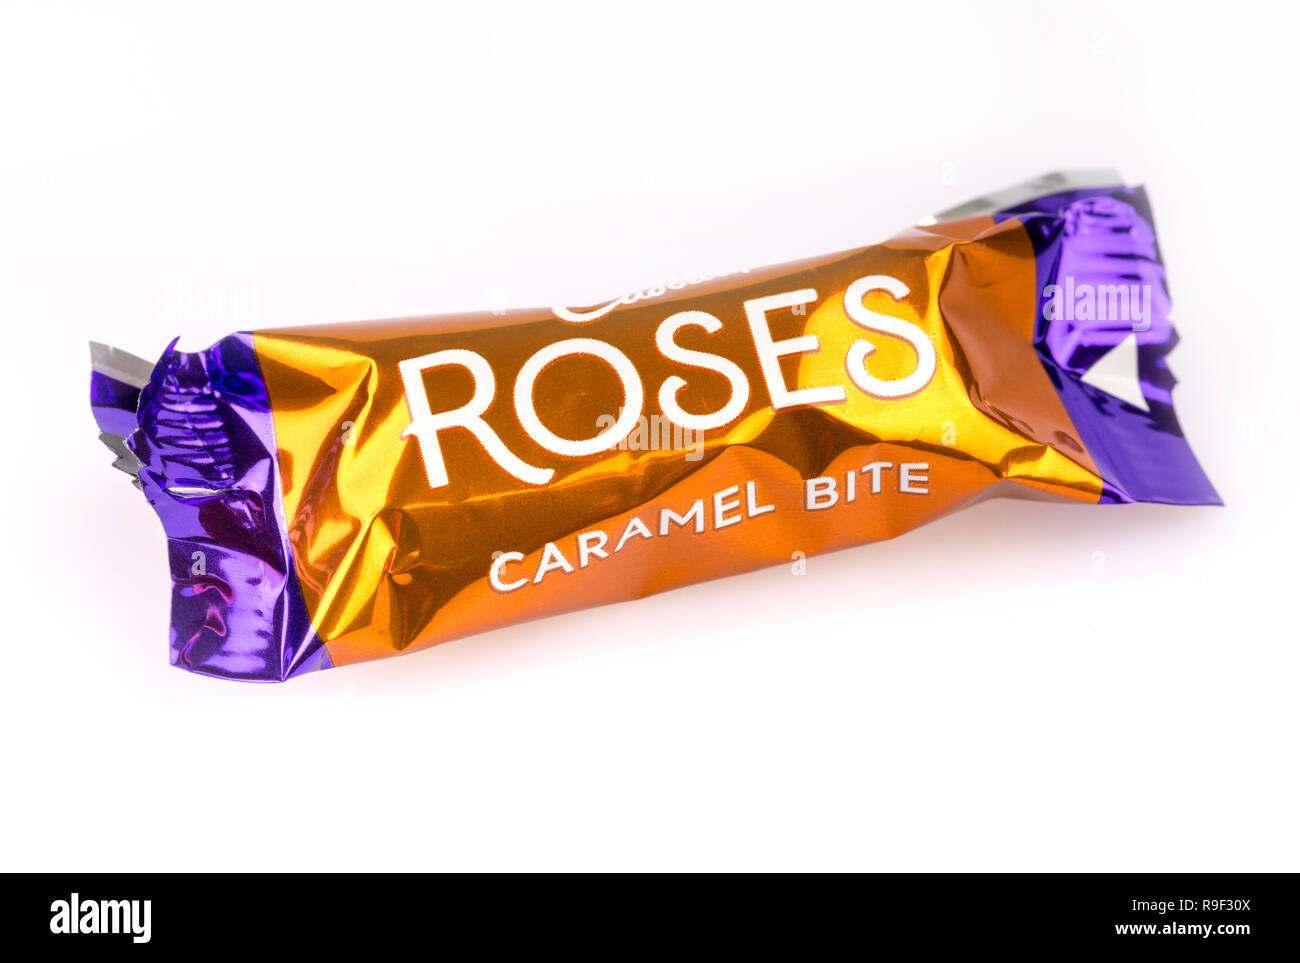 Der Caramel Bite Cadbury Roses Schokolade auf weißem Hintergrund Stockfoto